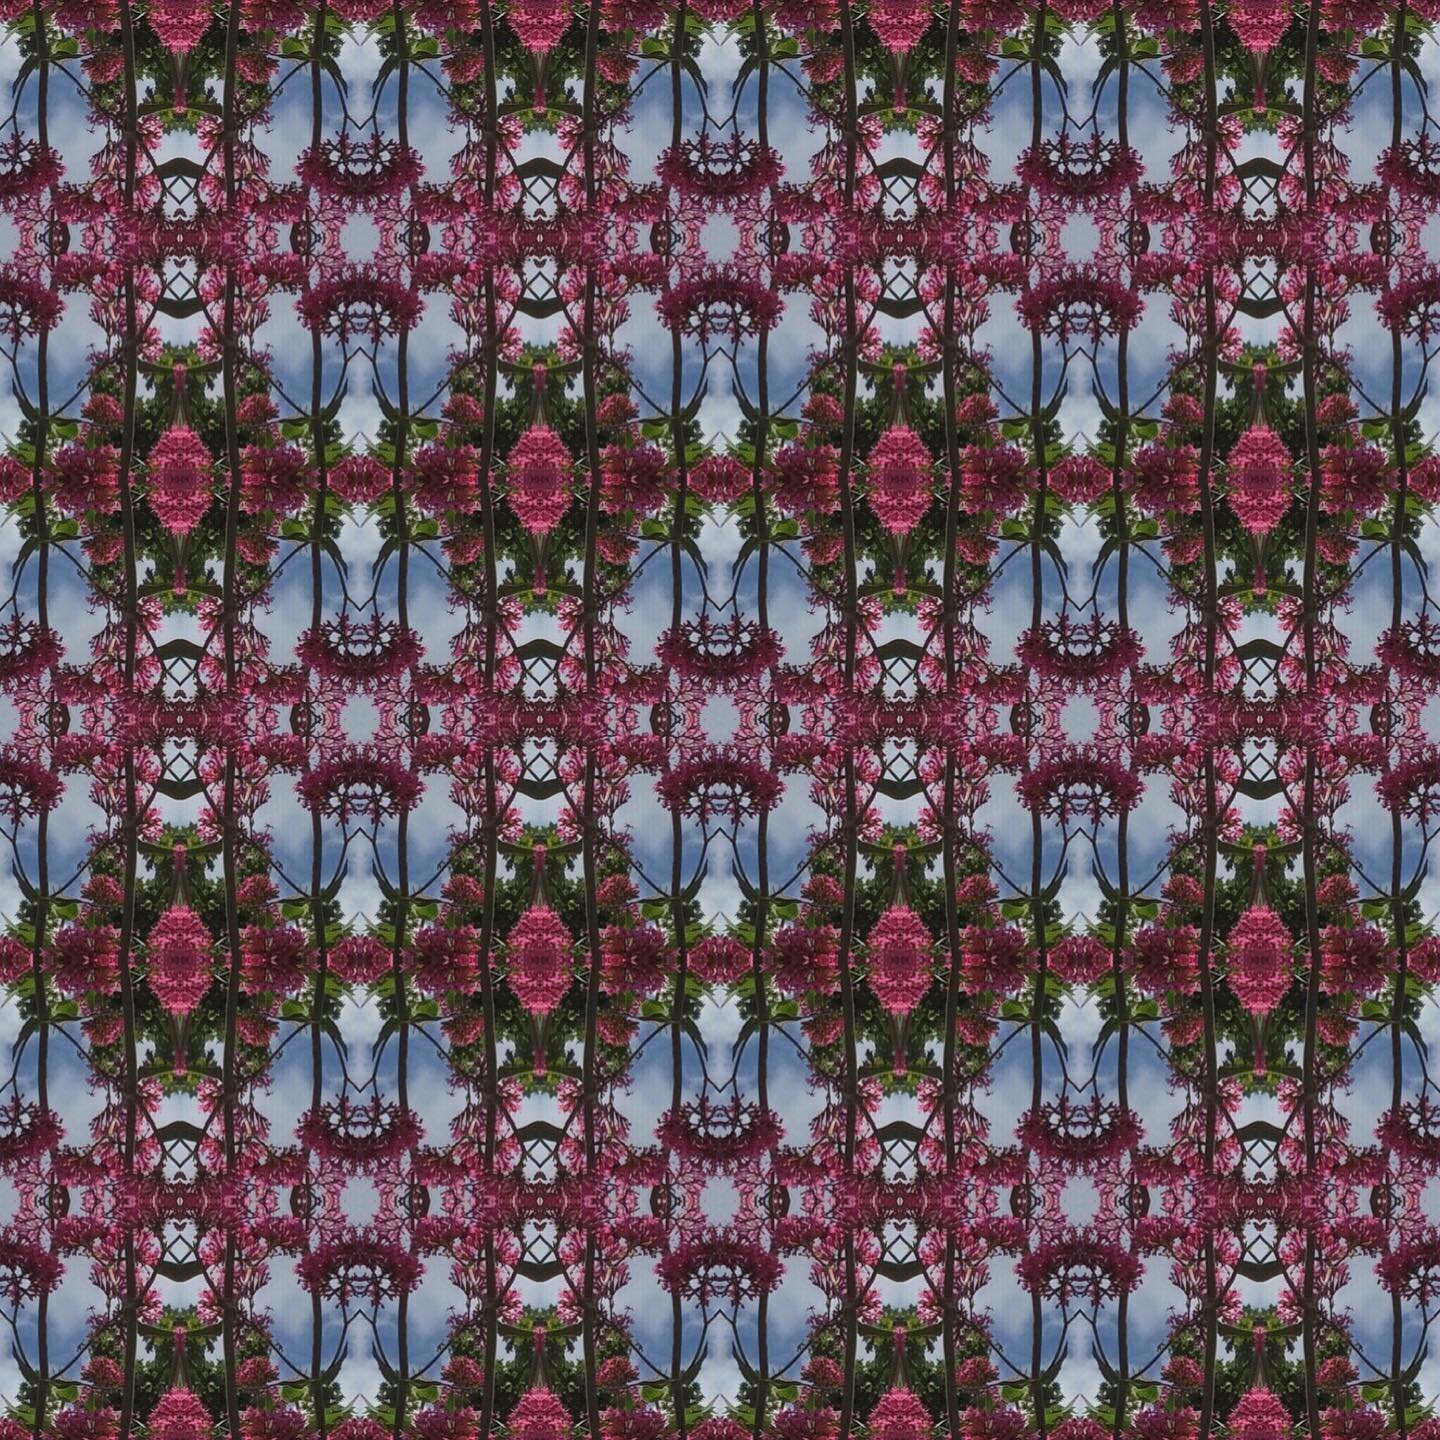 A few more! #pattern #repeatpattern  #digitalart #layoutapp #pinkflowers #bluesky #bankholidaymonday #cheddargorge